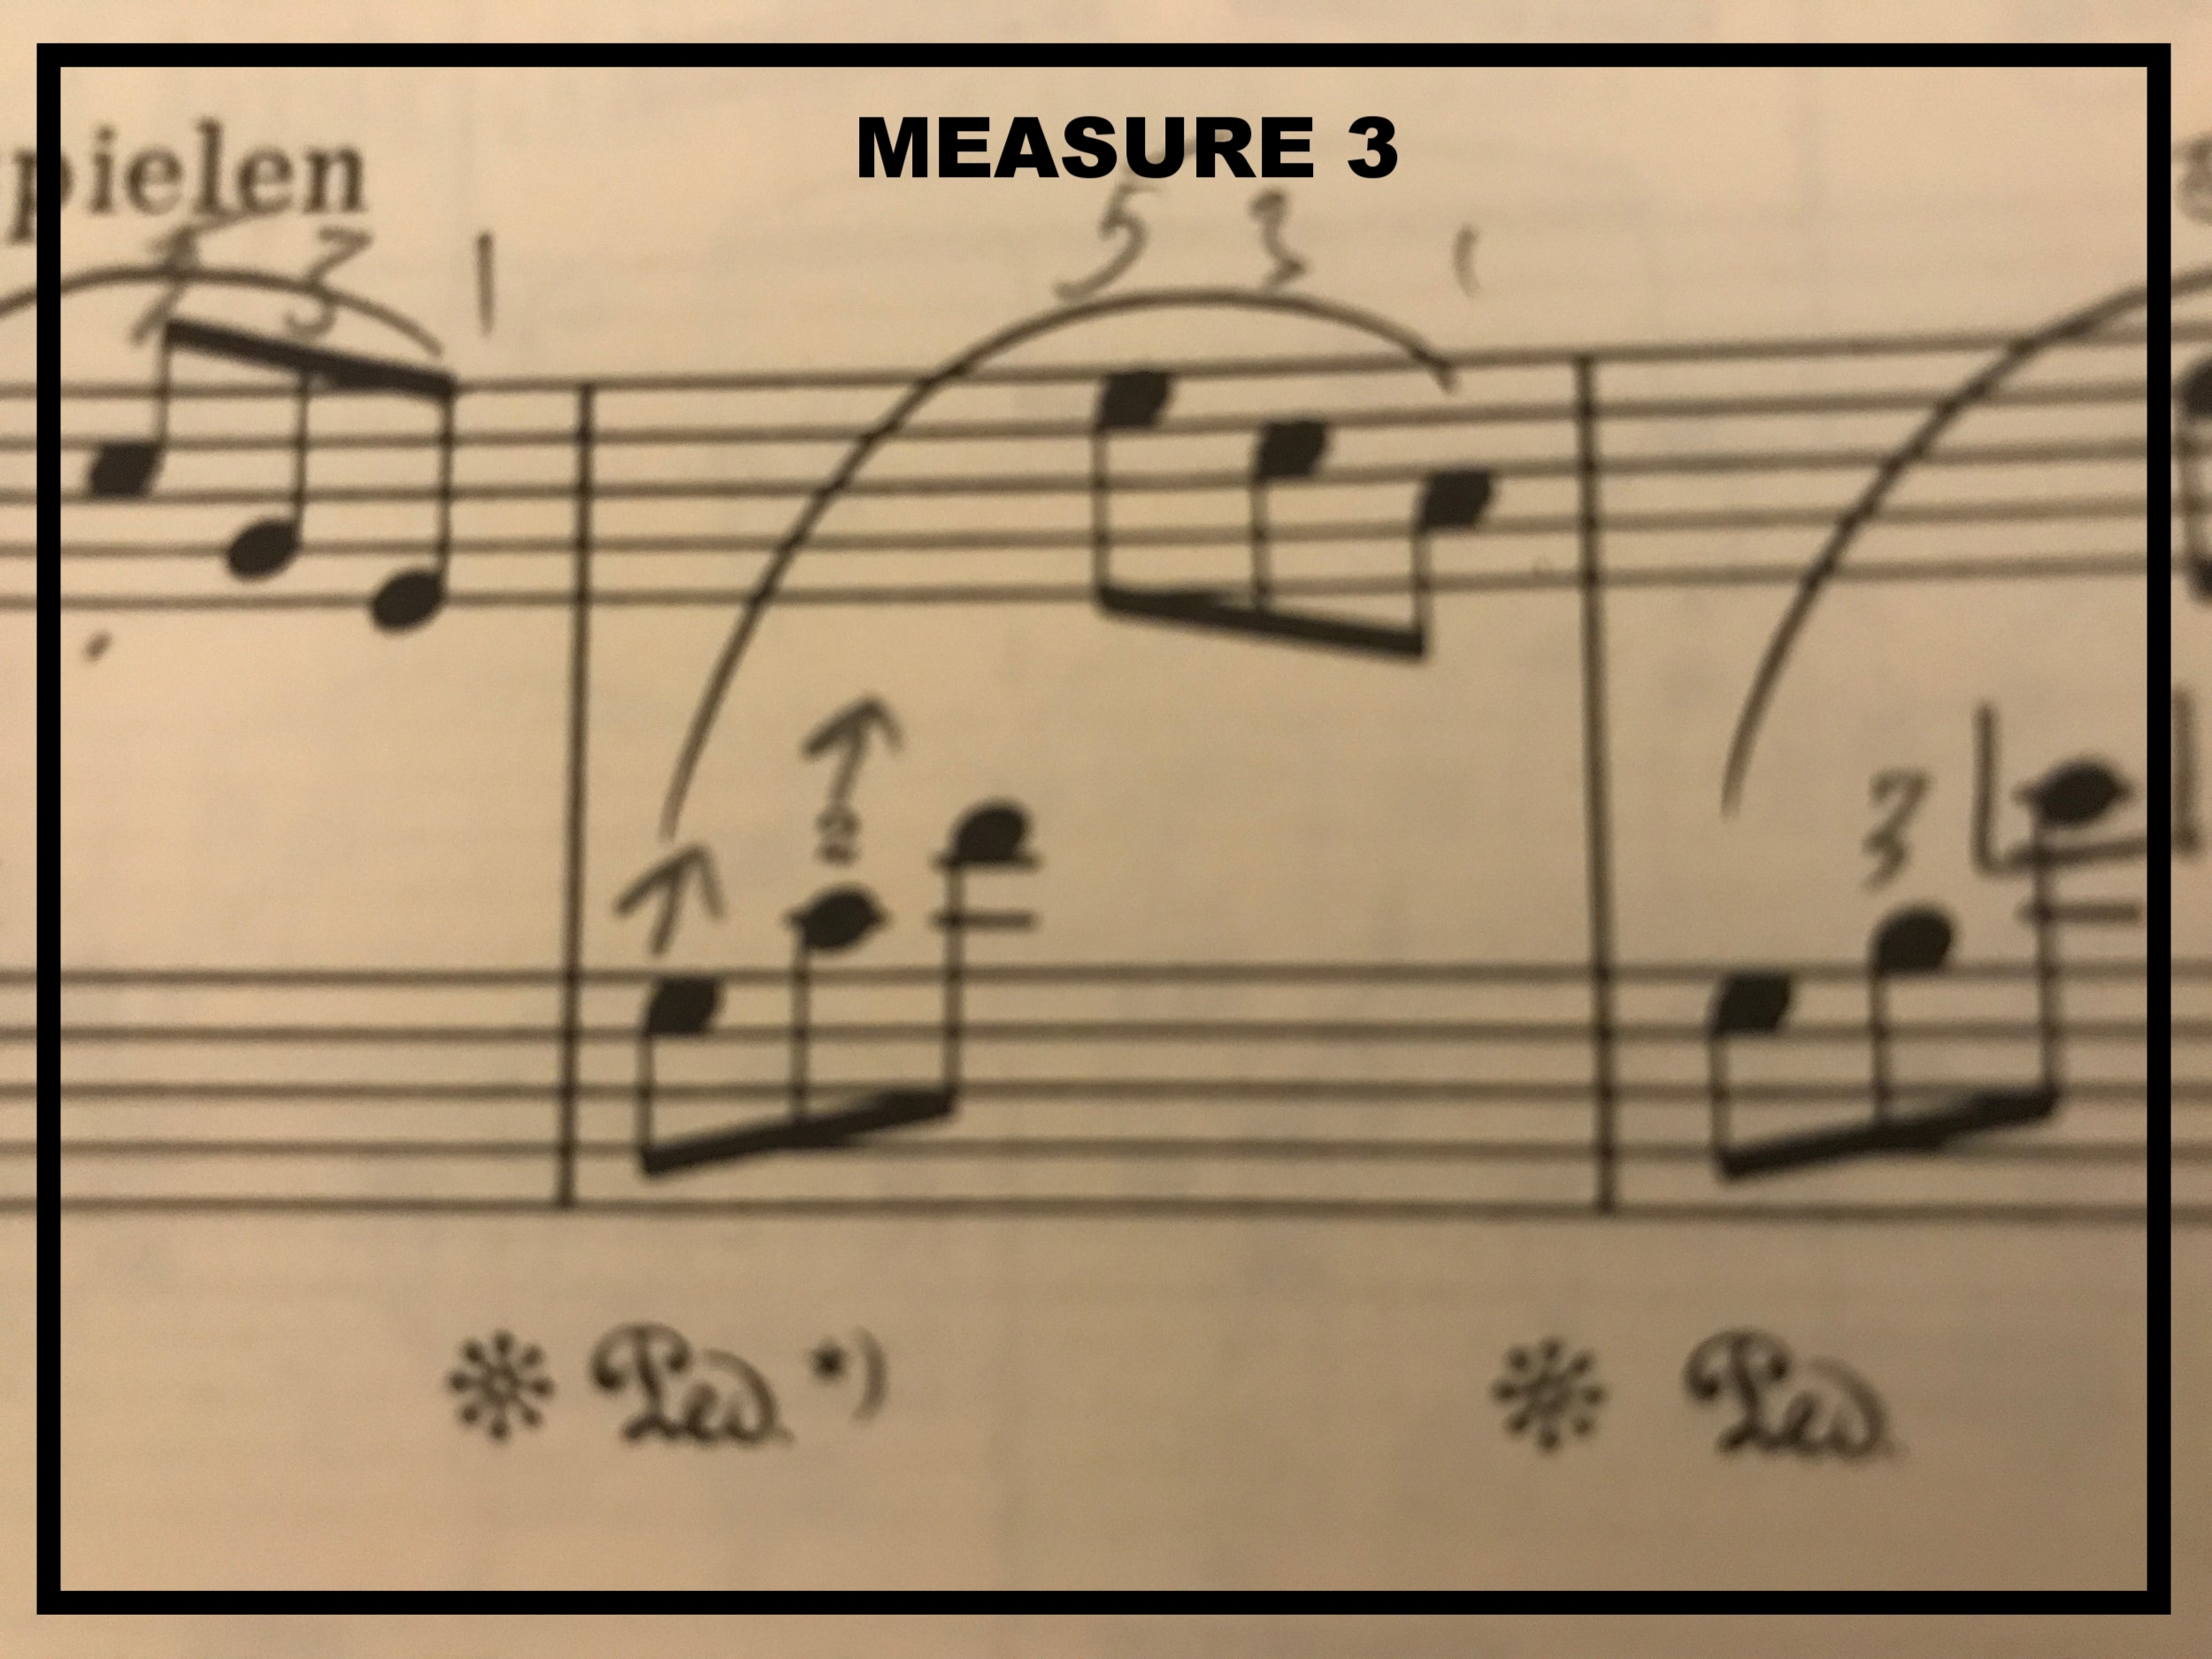 Measure 3